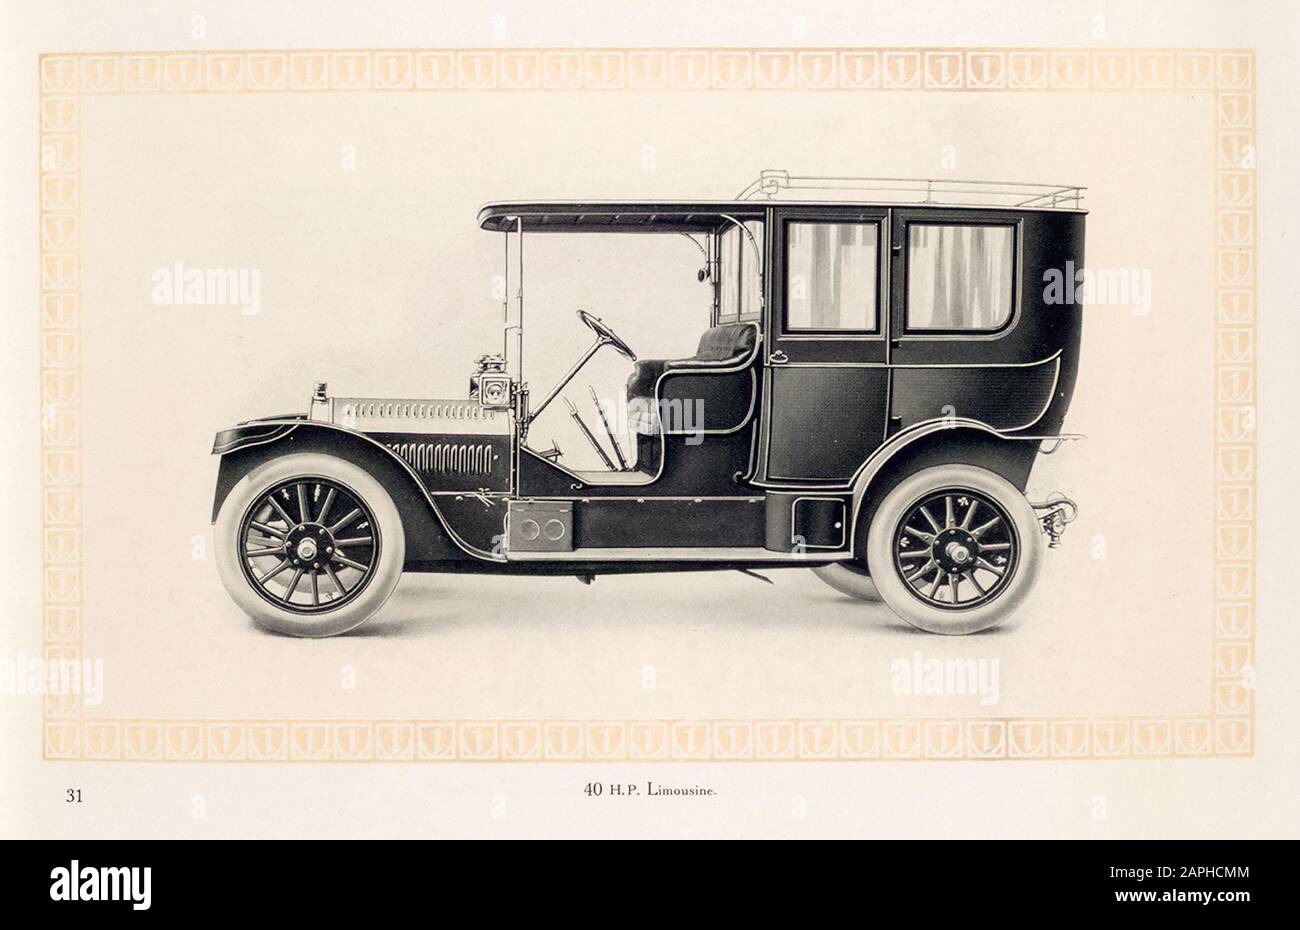 Oldtimer, Benz Motorwagen, Automobil, 40 ps Limousine, aus dem Benz & Co Katalog, Illustration von 1909 Stockfoto